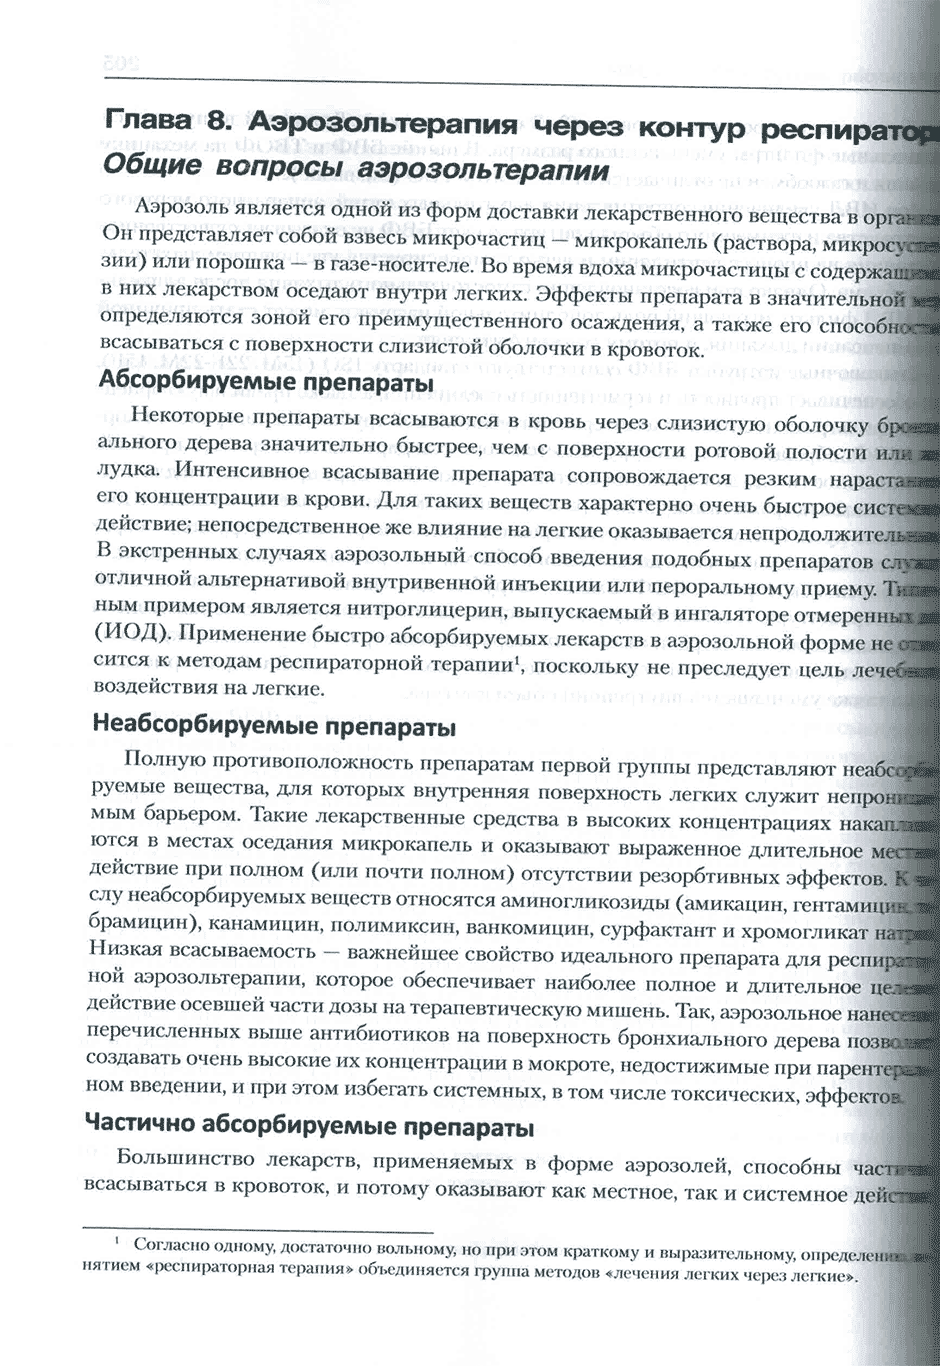 Пример страницы из книги "Искусственная вентиляция легких как медицинская технология" - Шурыгин И. А.